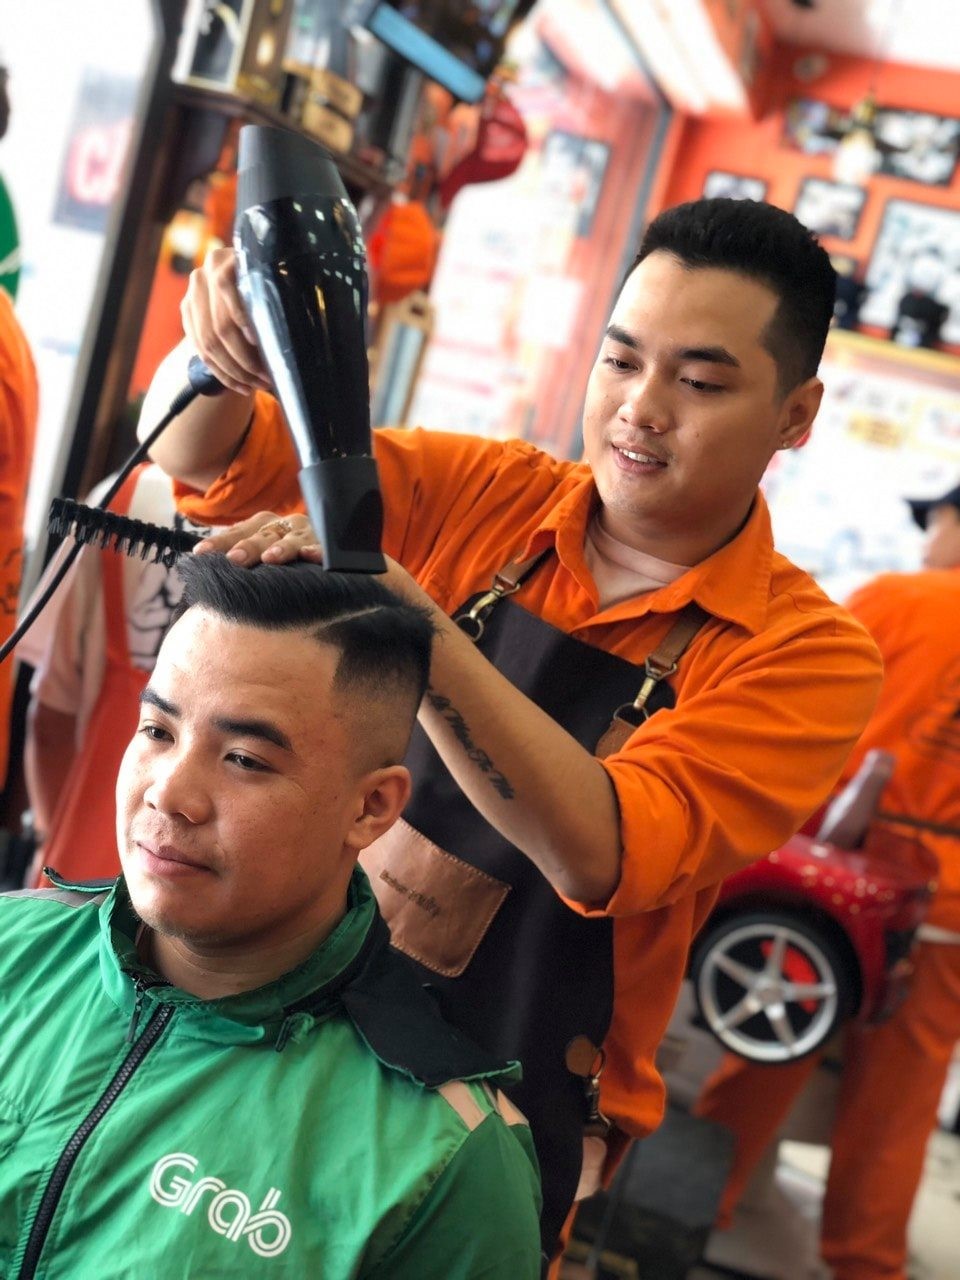 Đông Tây Barbershop: Nơi trải nghiệm cắt tóc độc đáo và hấp dẫn dành cho phái mạnh - ảnh 6